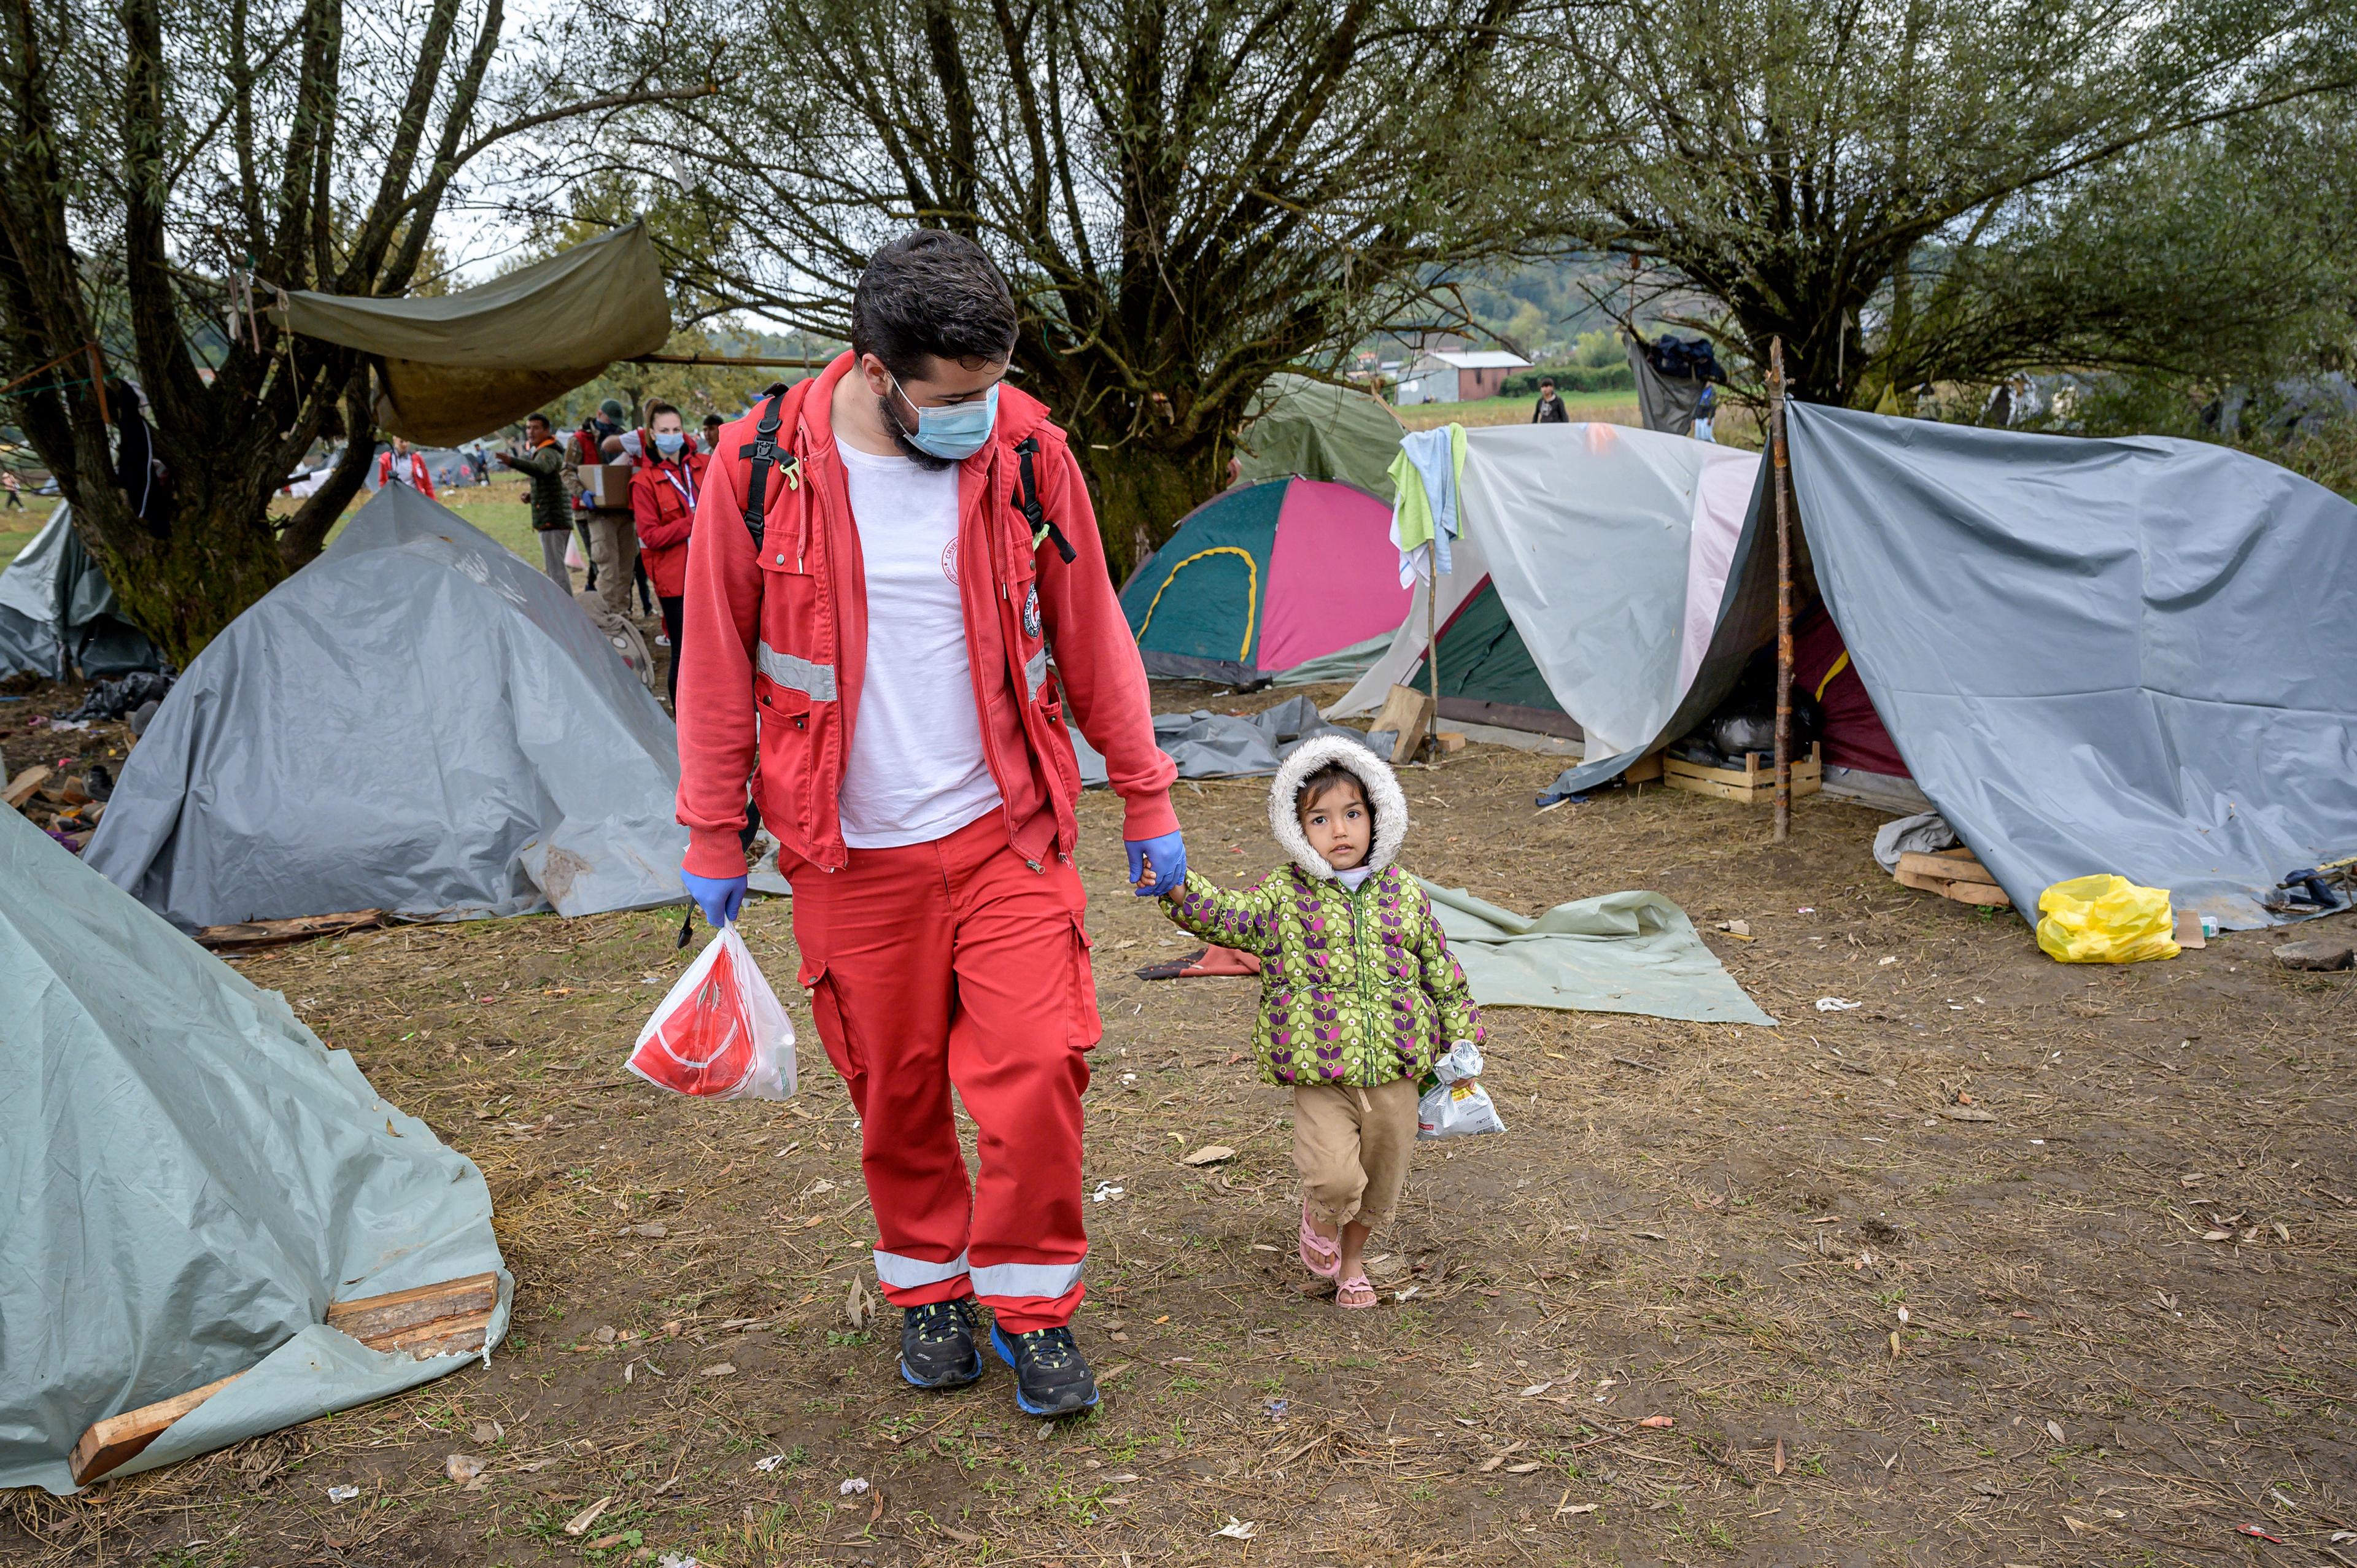 Ein Mann, der rote Hosen und eine rote Jacke trägt, hält mit seiner linken Hand ein kleines Kind. Sie laufen gemeinsam durch Zelte, die sich auf einer grünen Fläche befinden. 